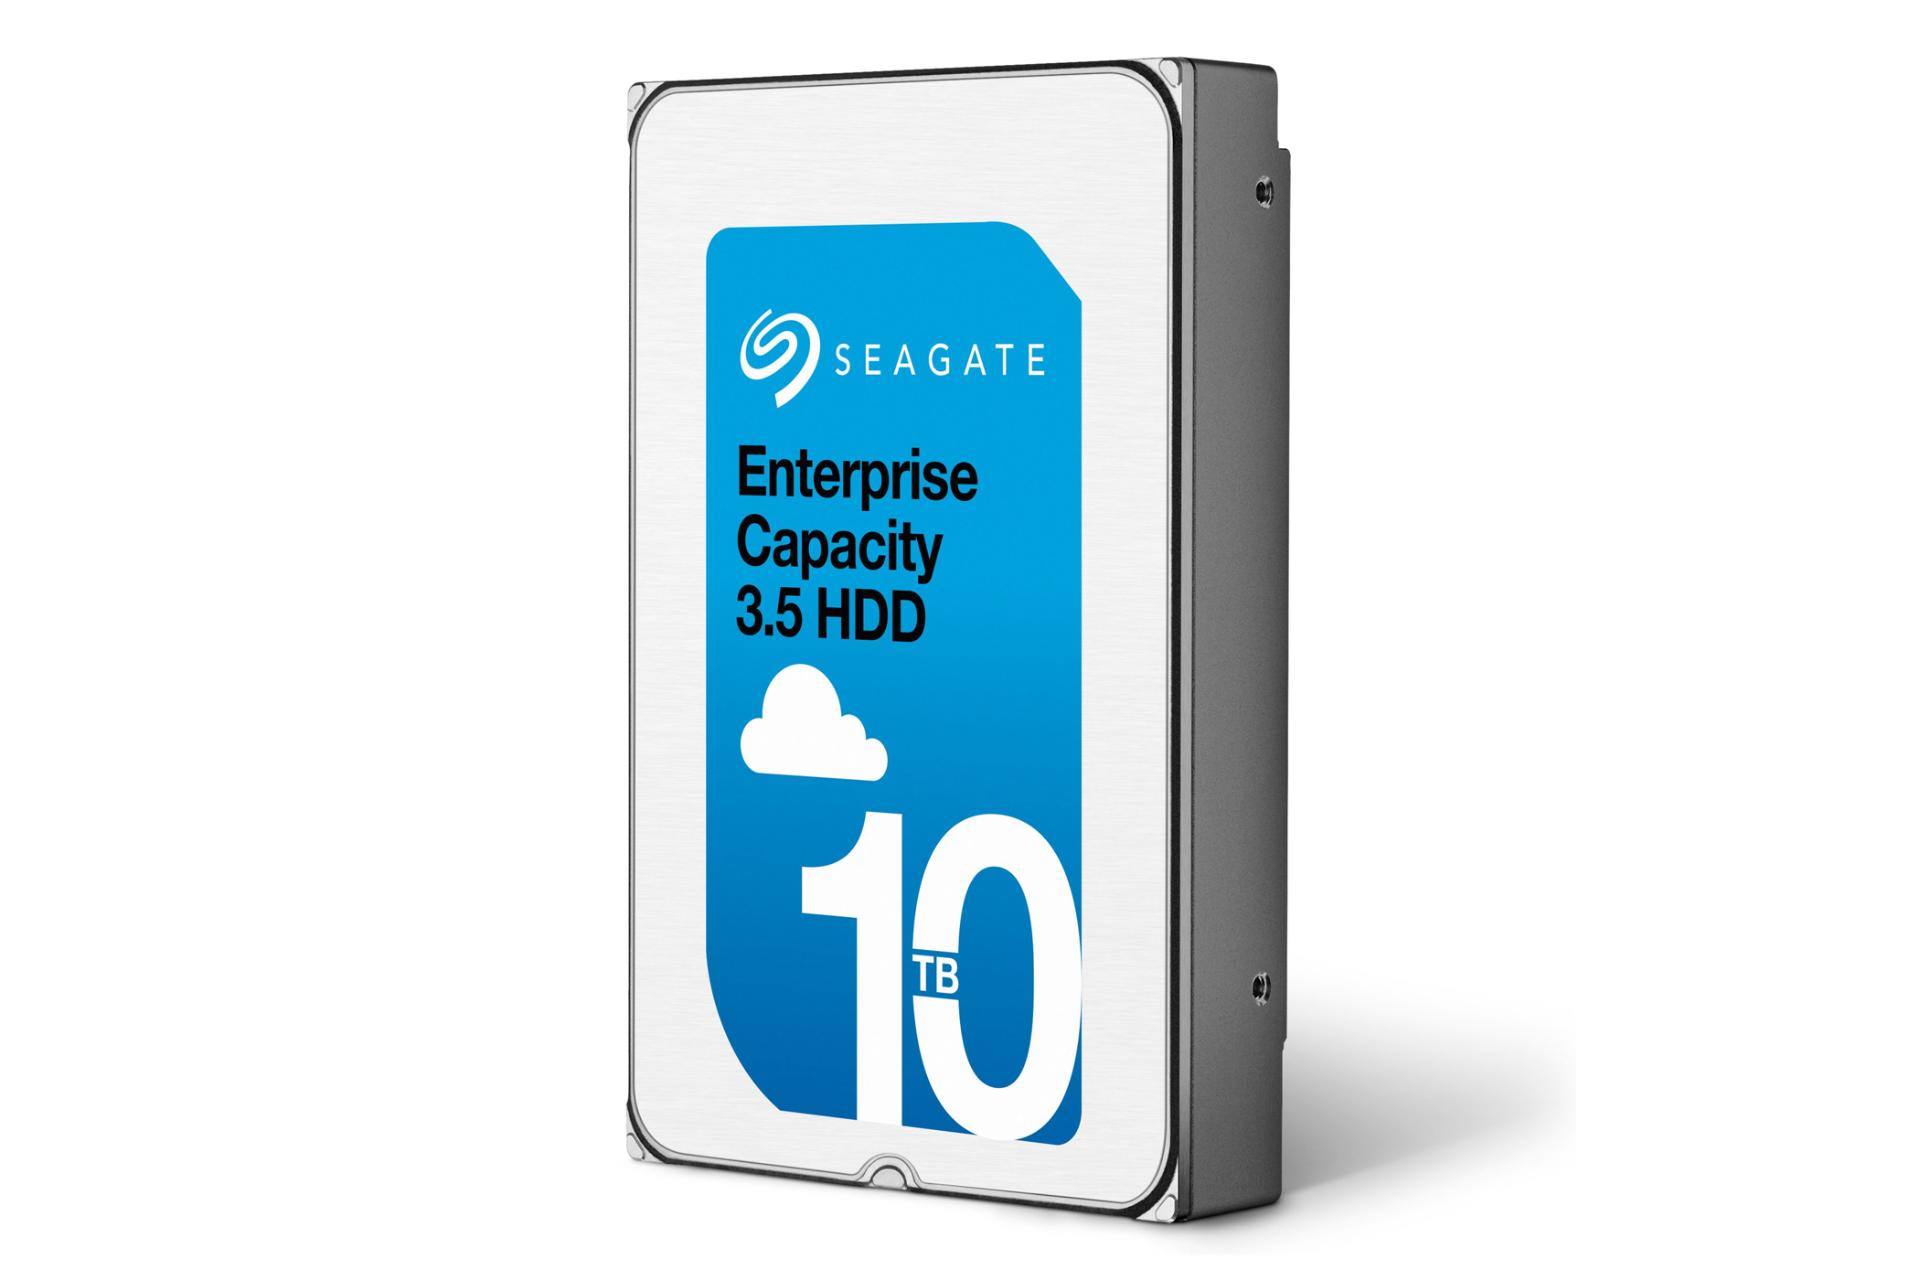 هارد دیسک سیگیت Enterprise Capacity ST10000NM0016 ظرفیت 10 ترابایت